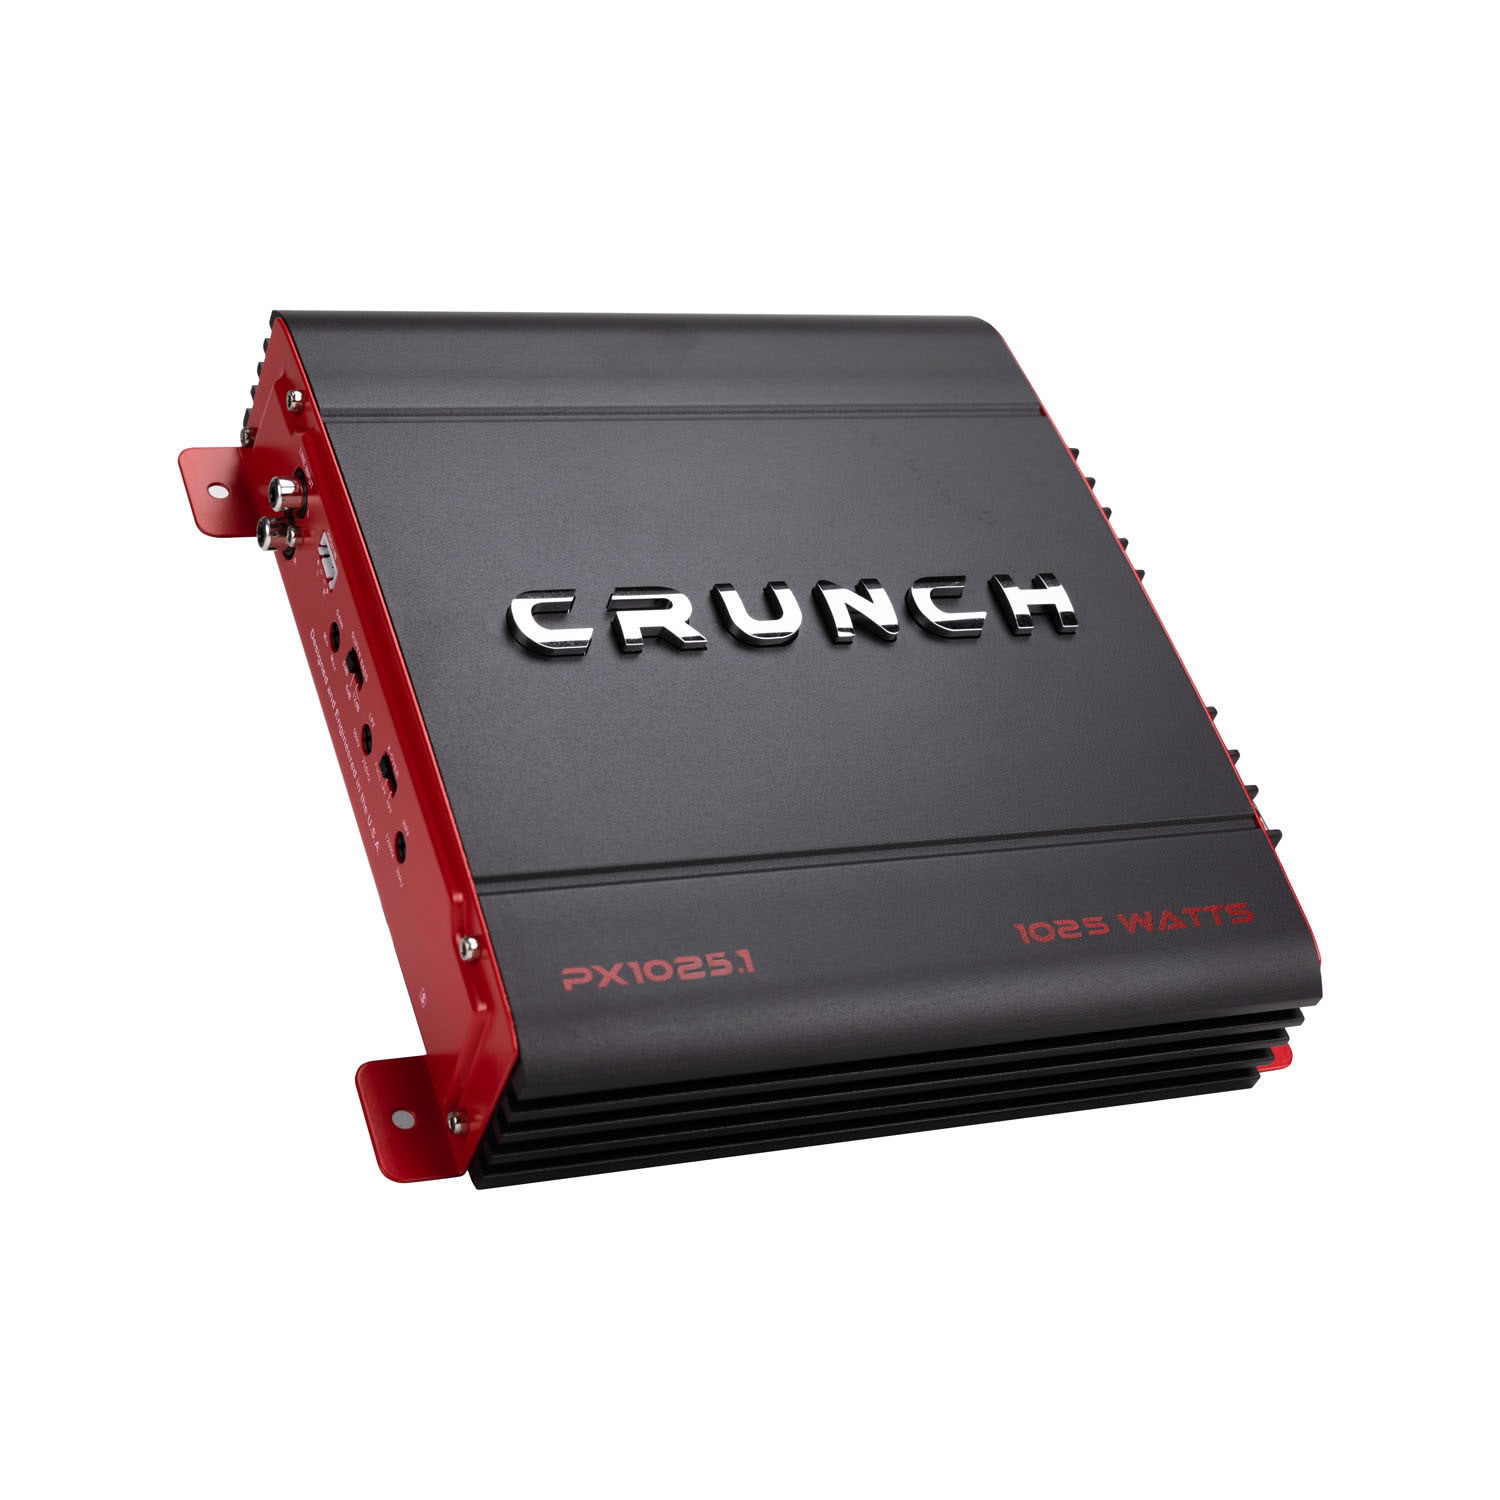 PX-1025.4 Power X 1000 Watt Amplifier | Crunch